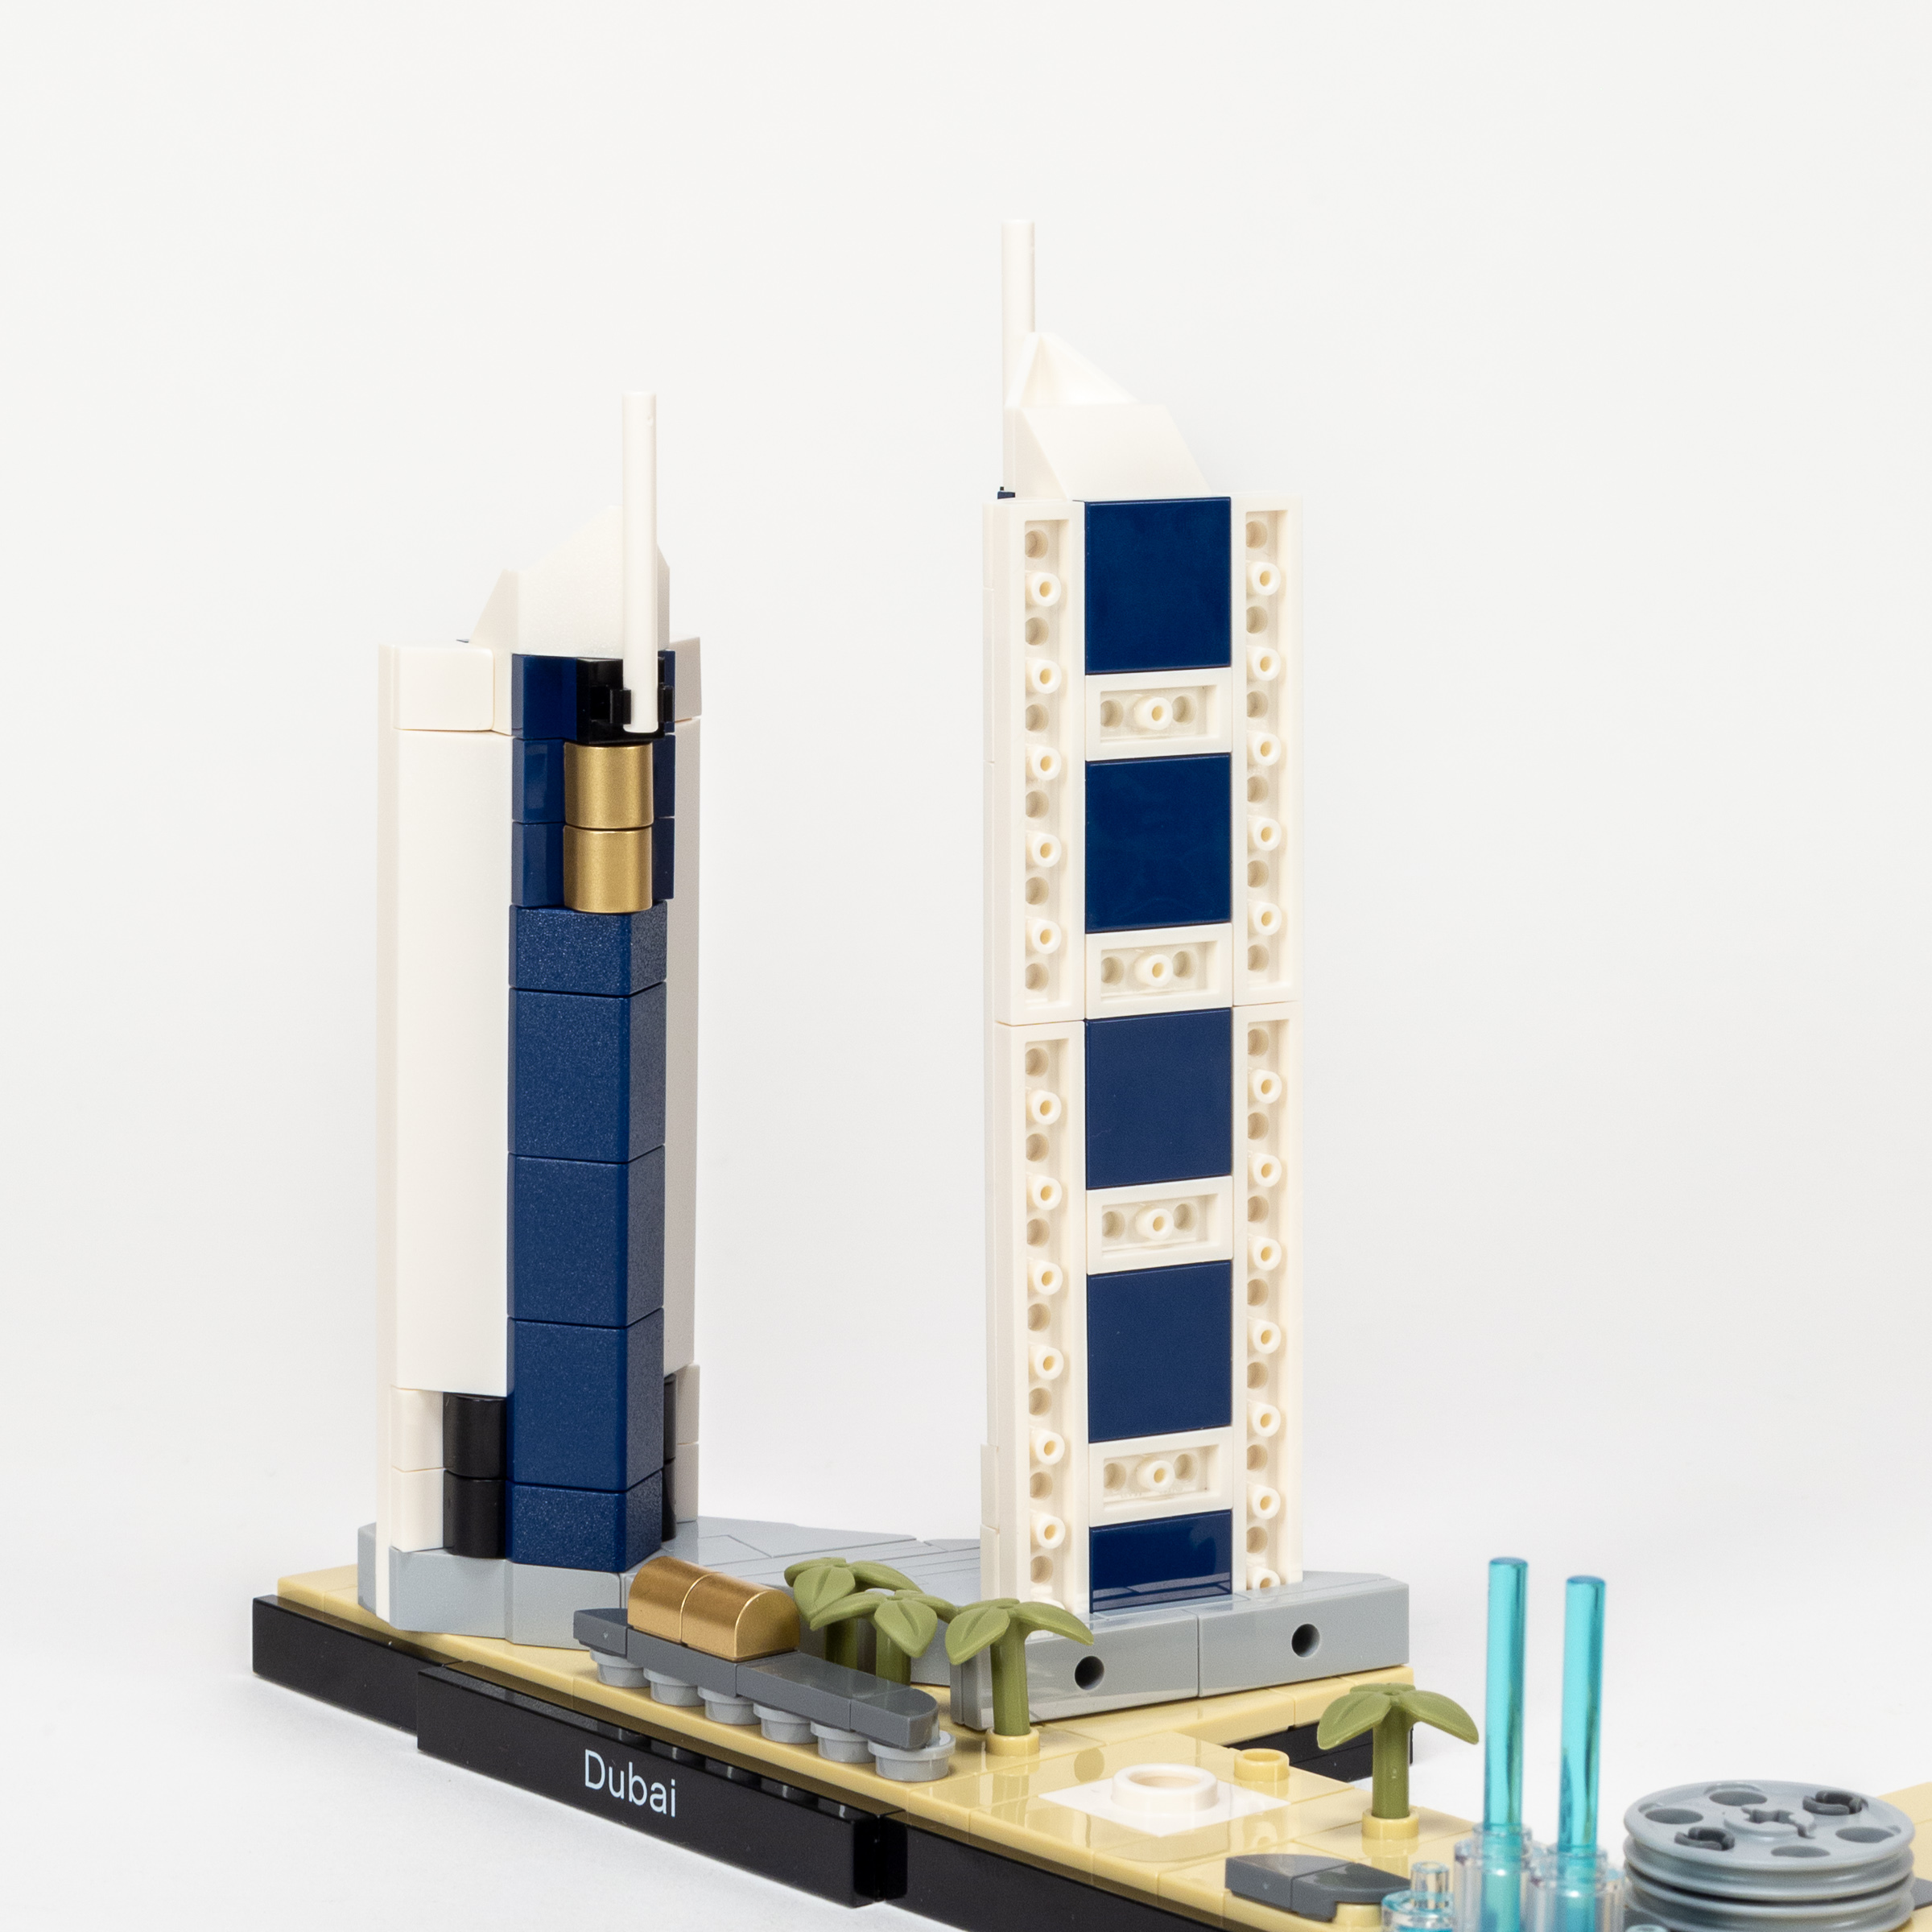 LEGO Architecture Las Vegas (21038) Set Details - The Brick Fan